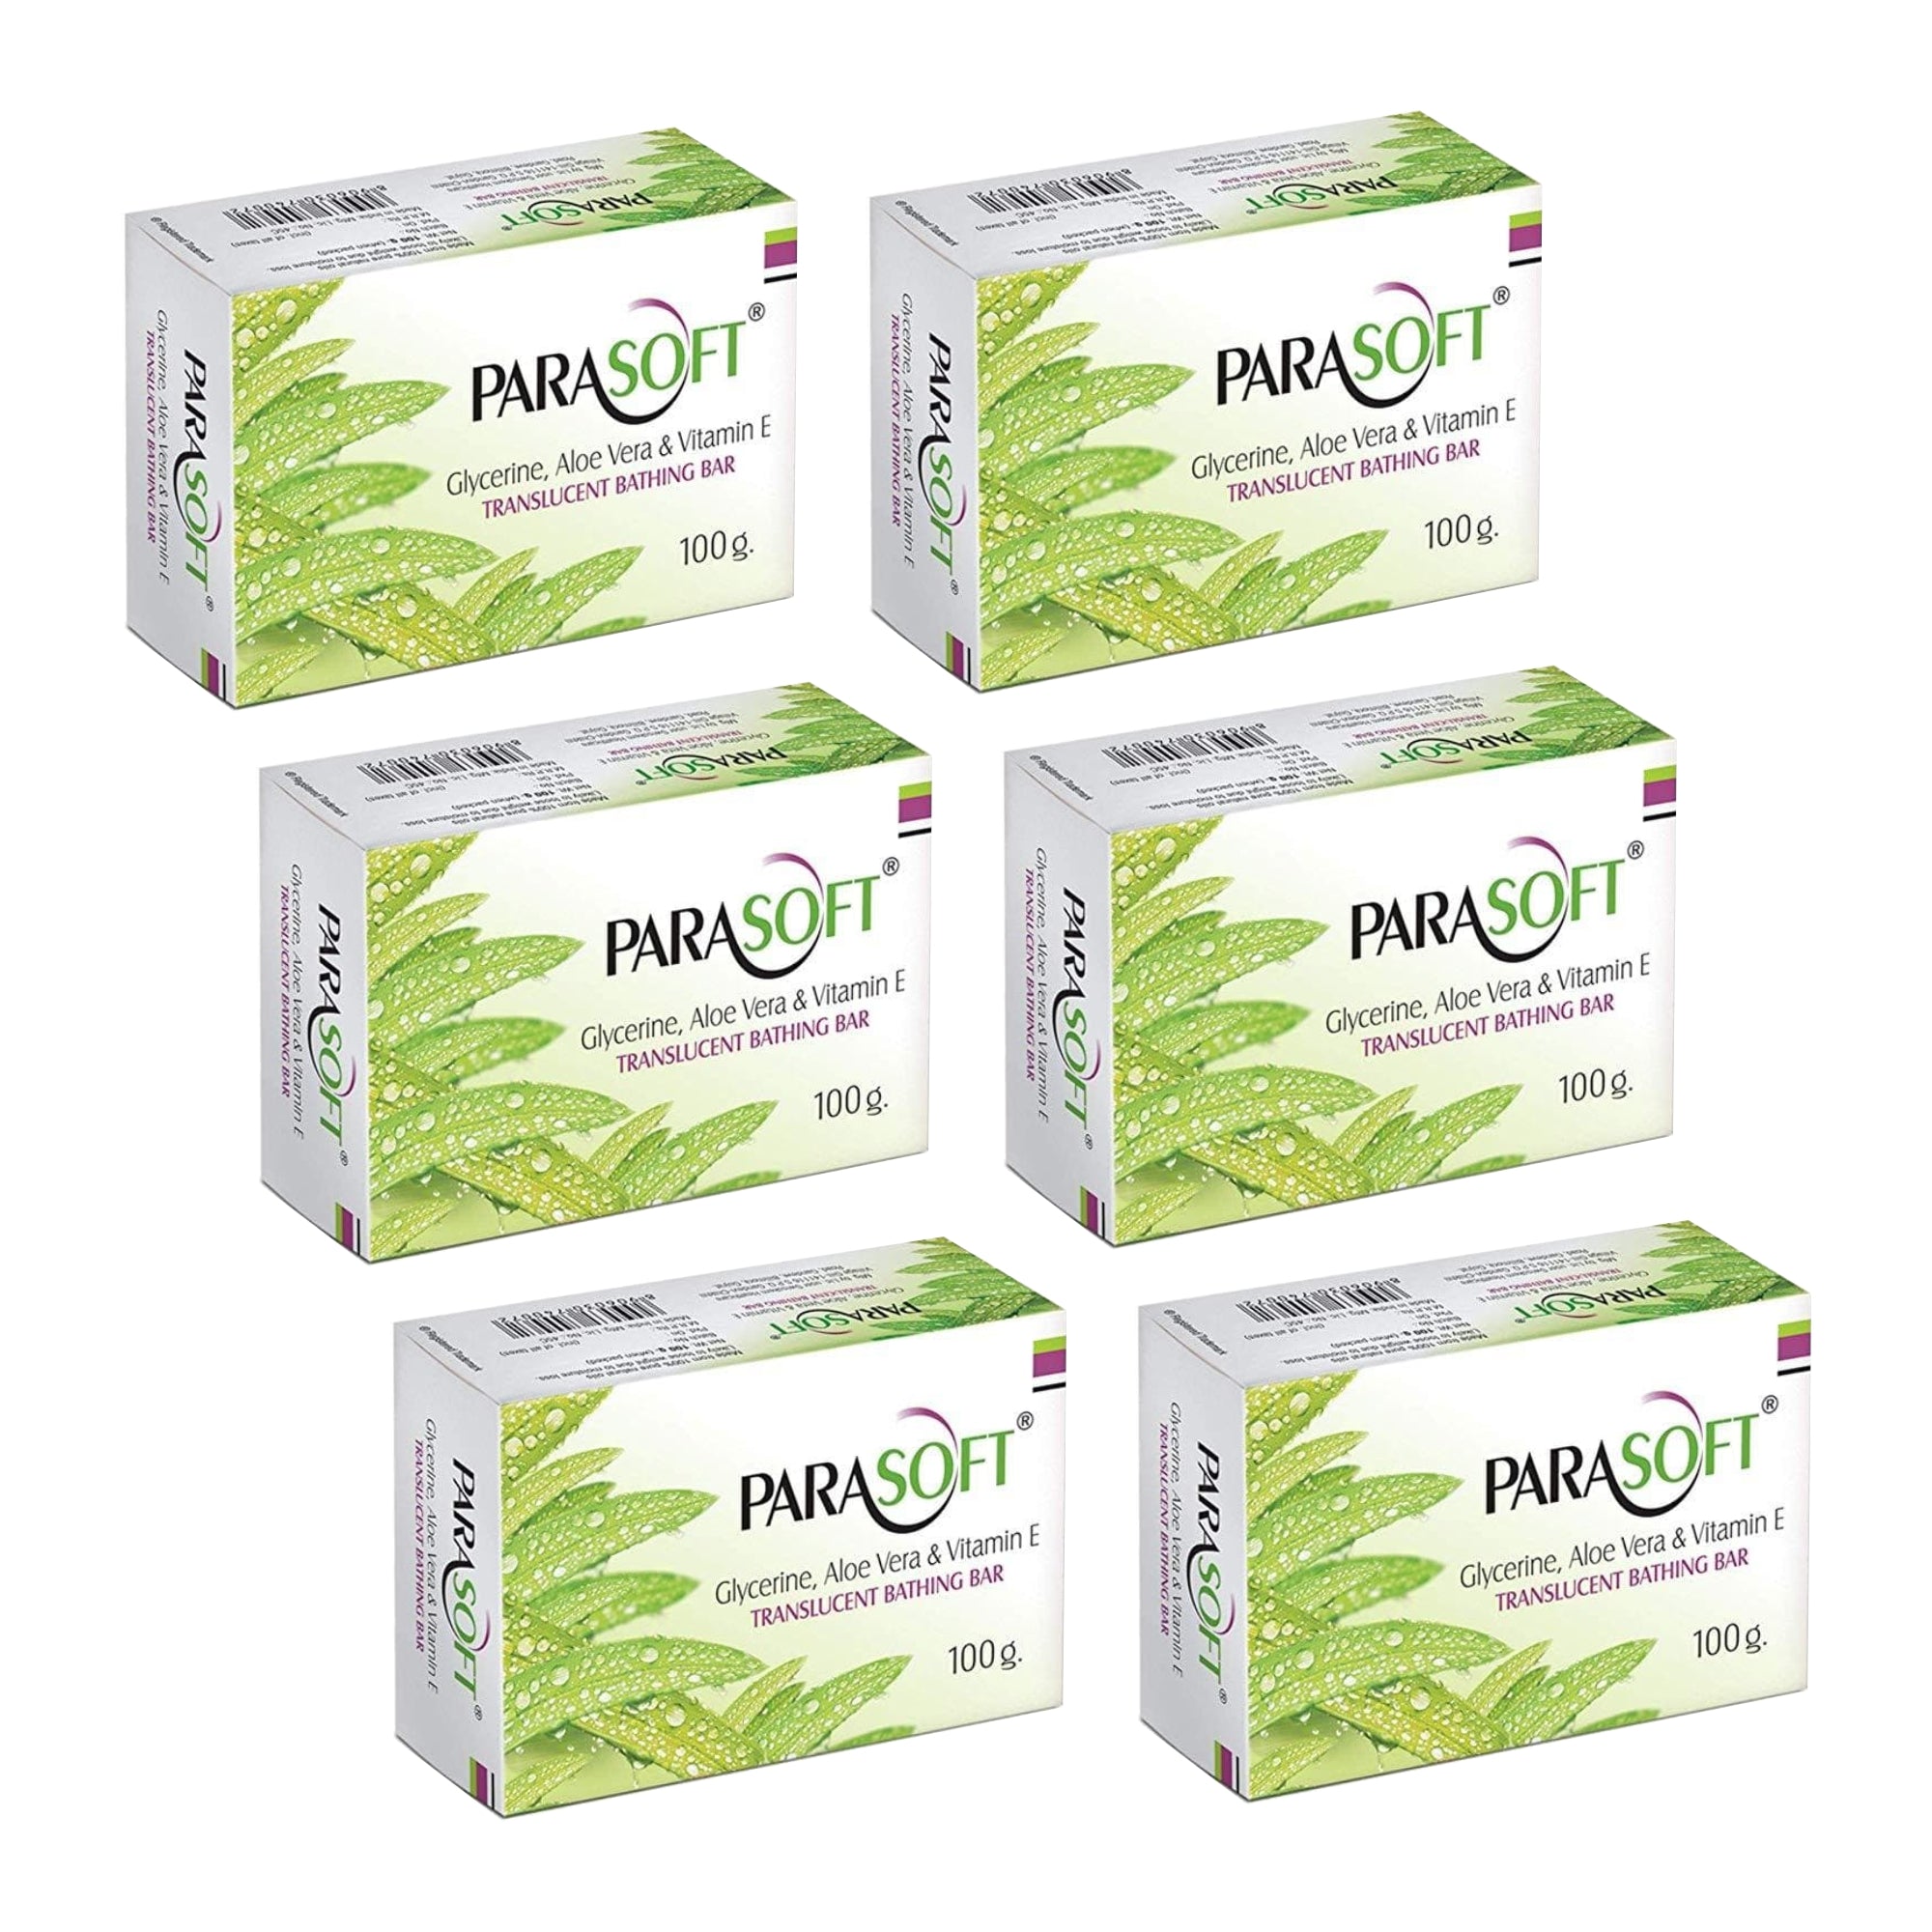 Shoprythm Dry,Parasoft Pack of 6 Salve Parasoft Soap 100g